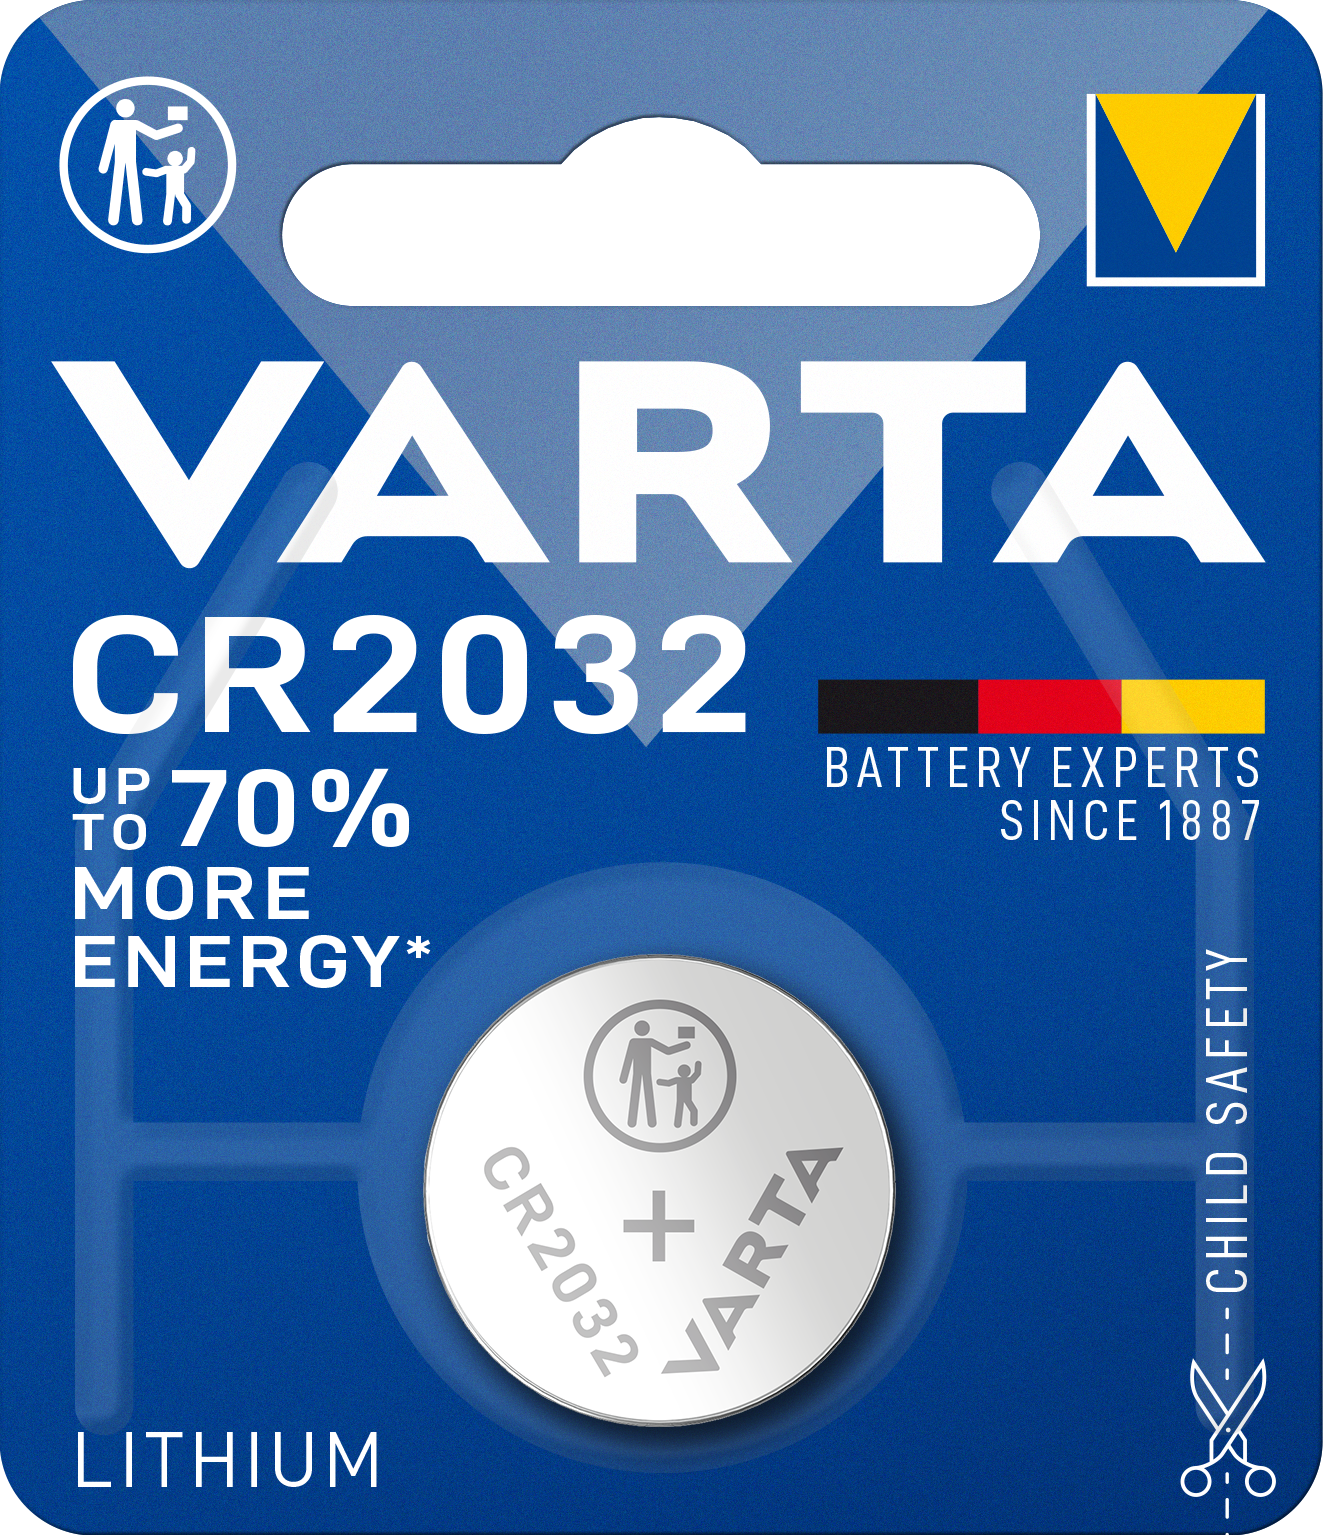 VARTA - Lithium - 2032